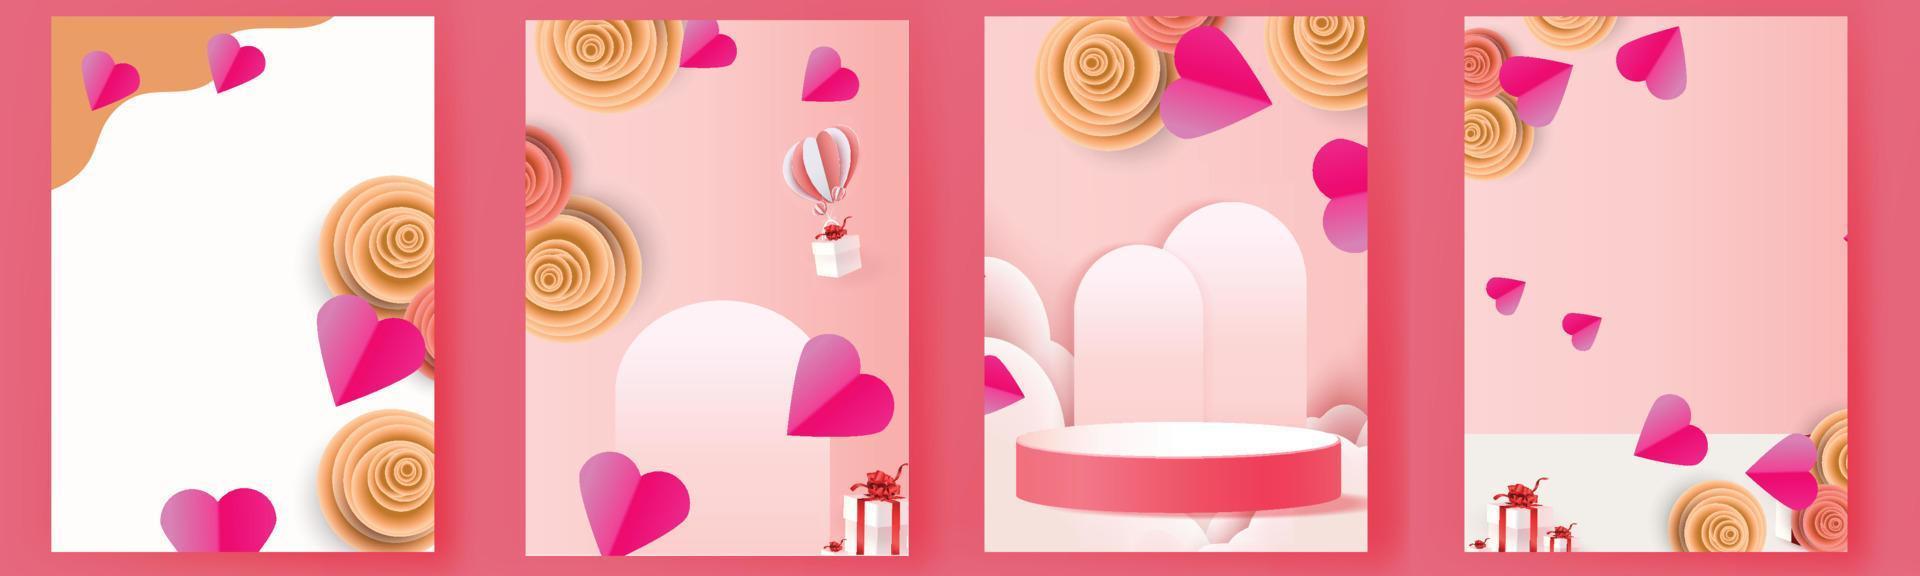 conjunto dos namorados fundo rosa banner folheto cartão impressão gráfico de vetor